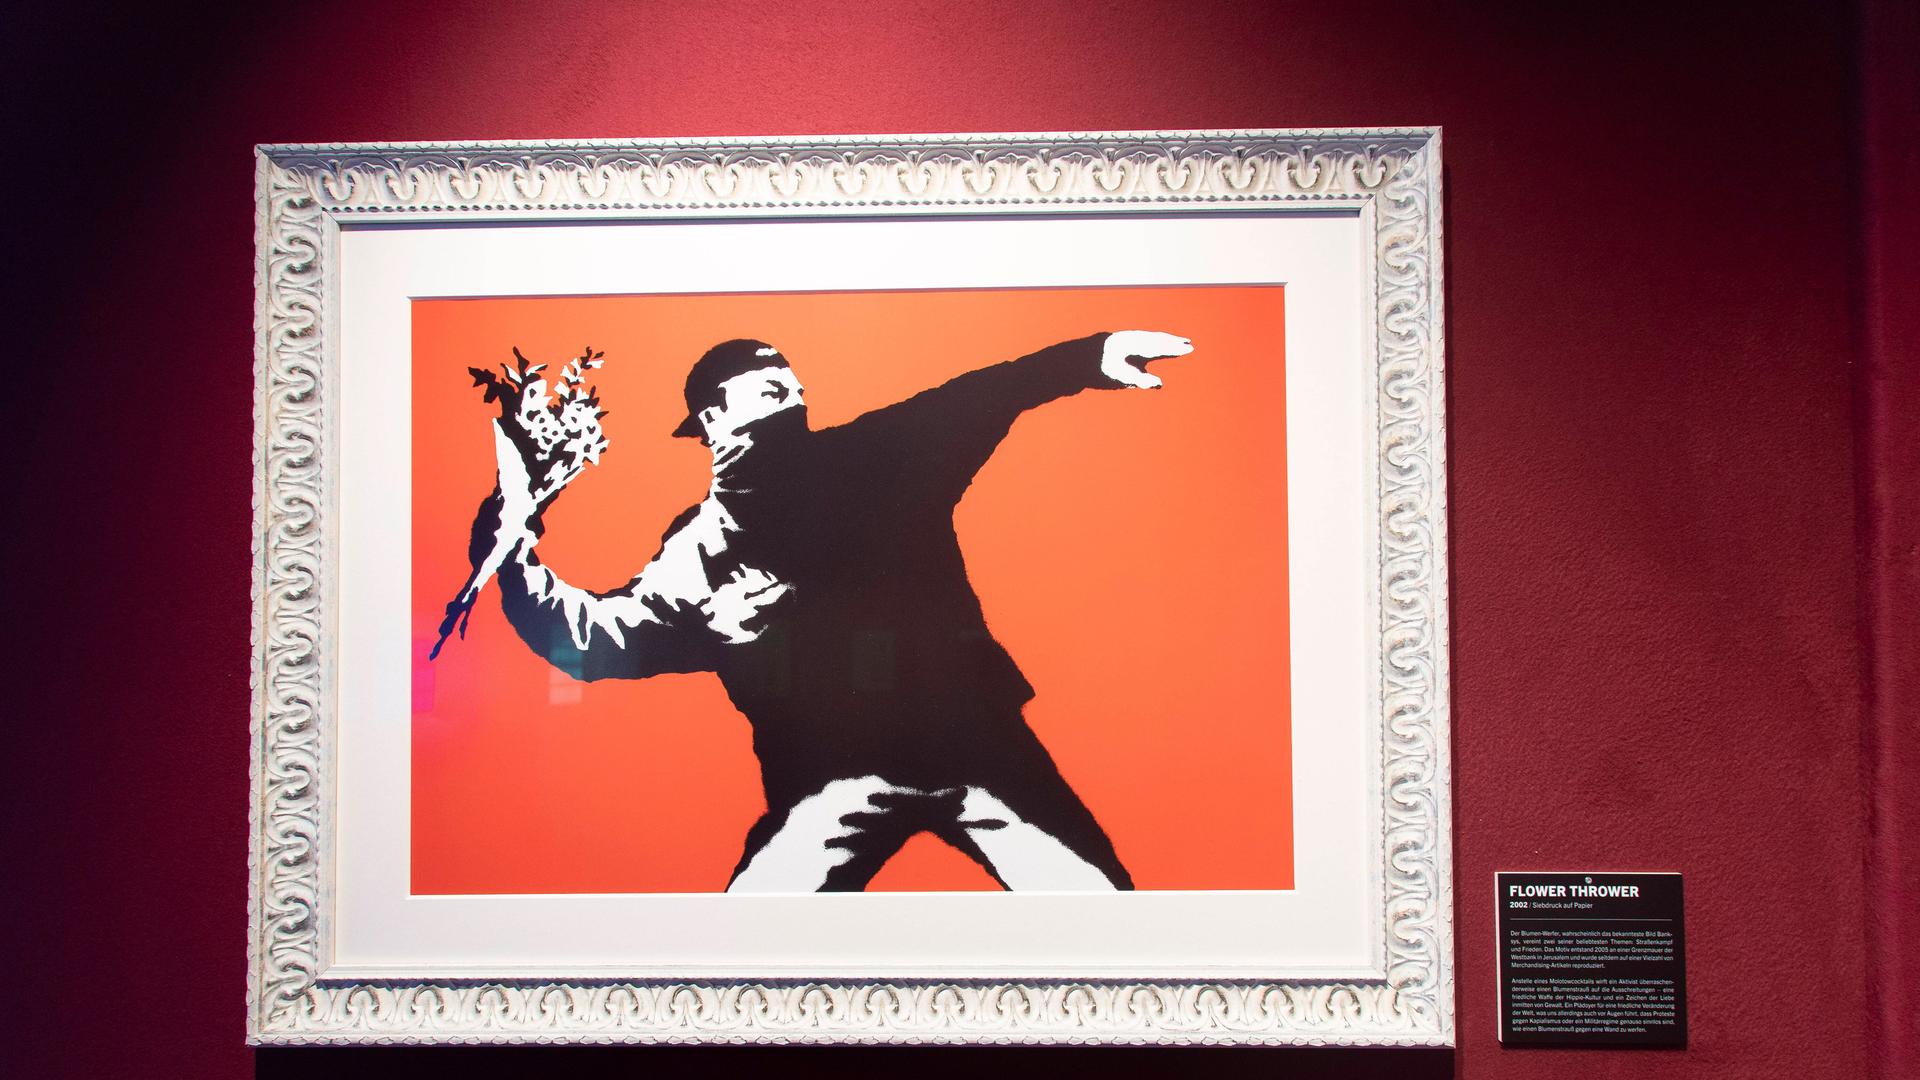 In einem Bilderrahmen ist ein Bild von Banksy zu sehen. Es zeigt in Schwarz einen Mann, der in der Haltung eines Steinewerfers nicht etwa Steine in der ausholenden Hand hält, sondern einen Blumenstrauß.